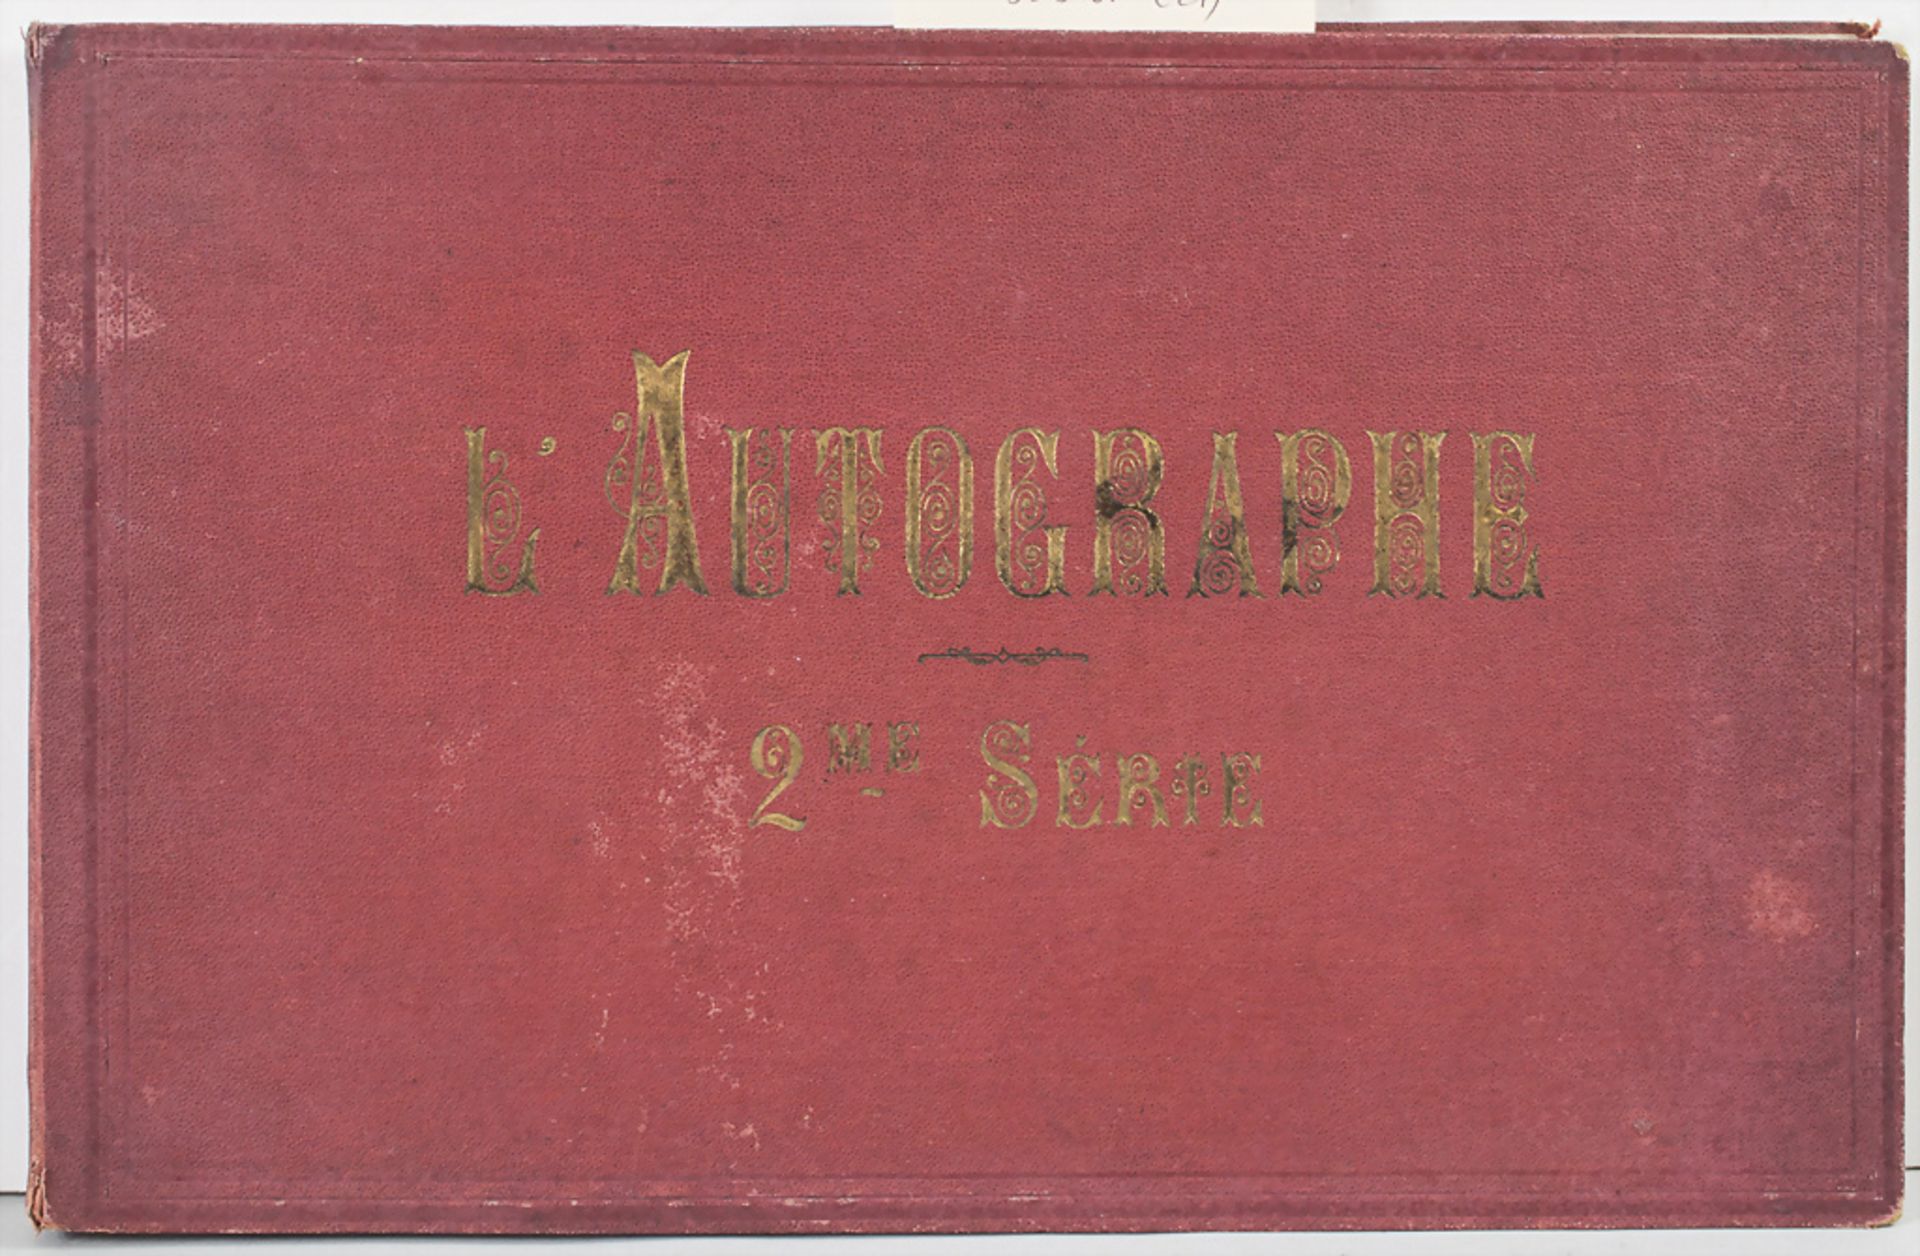 Alphonse Karr: 'L'autographe événements de 1870-1871, deuxieme série', Paris 1872